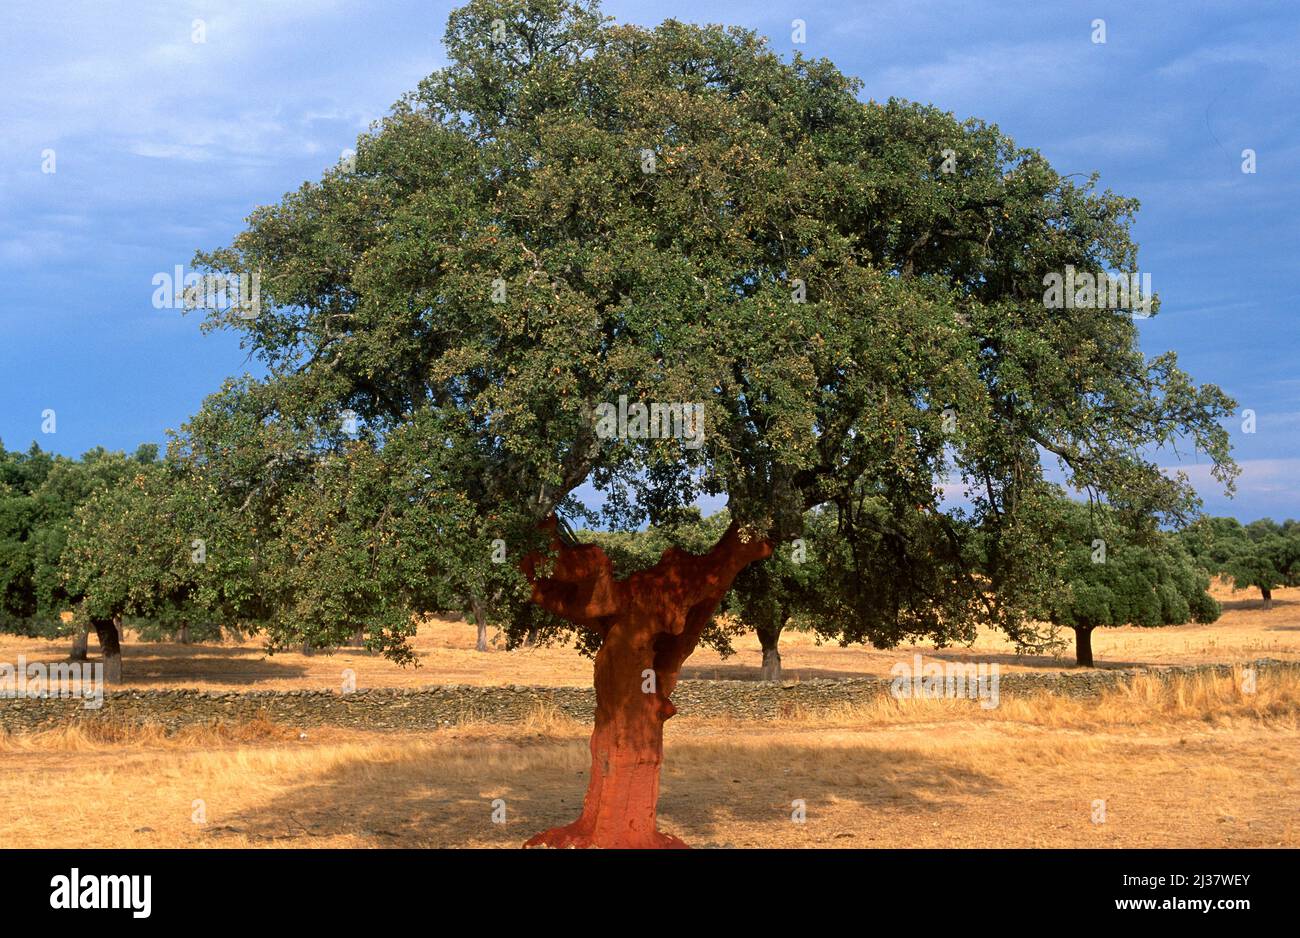 Le chêne de liège (Quercus suber) est un arbre à feuilles persistantes originaire du bassin méditerranéen occidental. Son écorce est utilisée pour fabriquer des bouchons, dans la décoration et comme isolant Banque D'Images